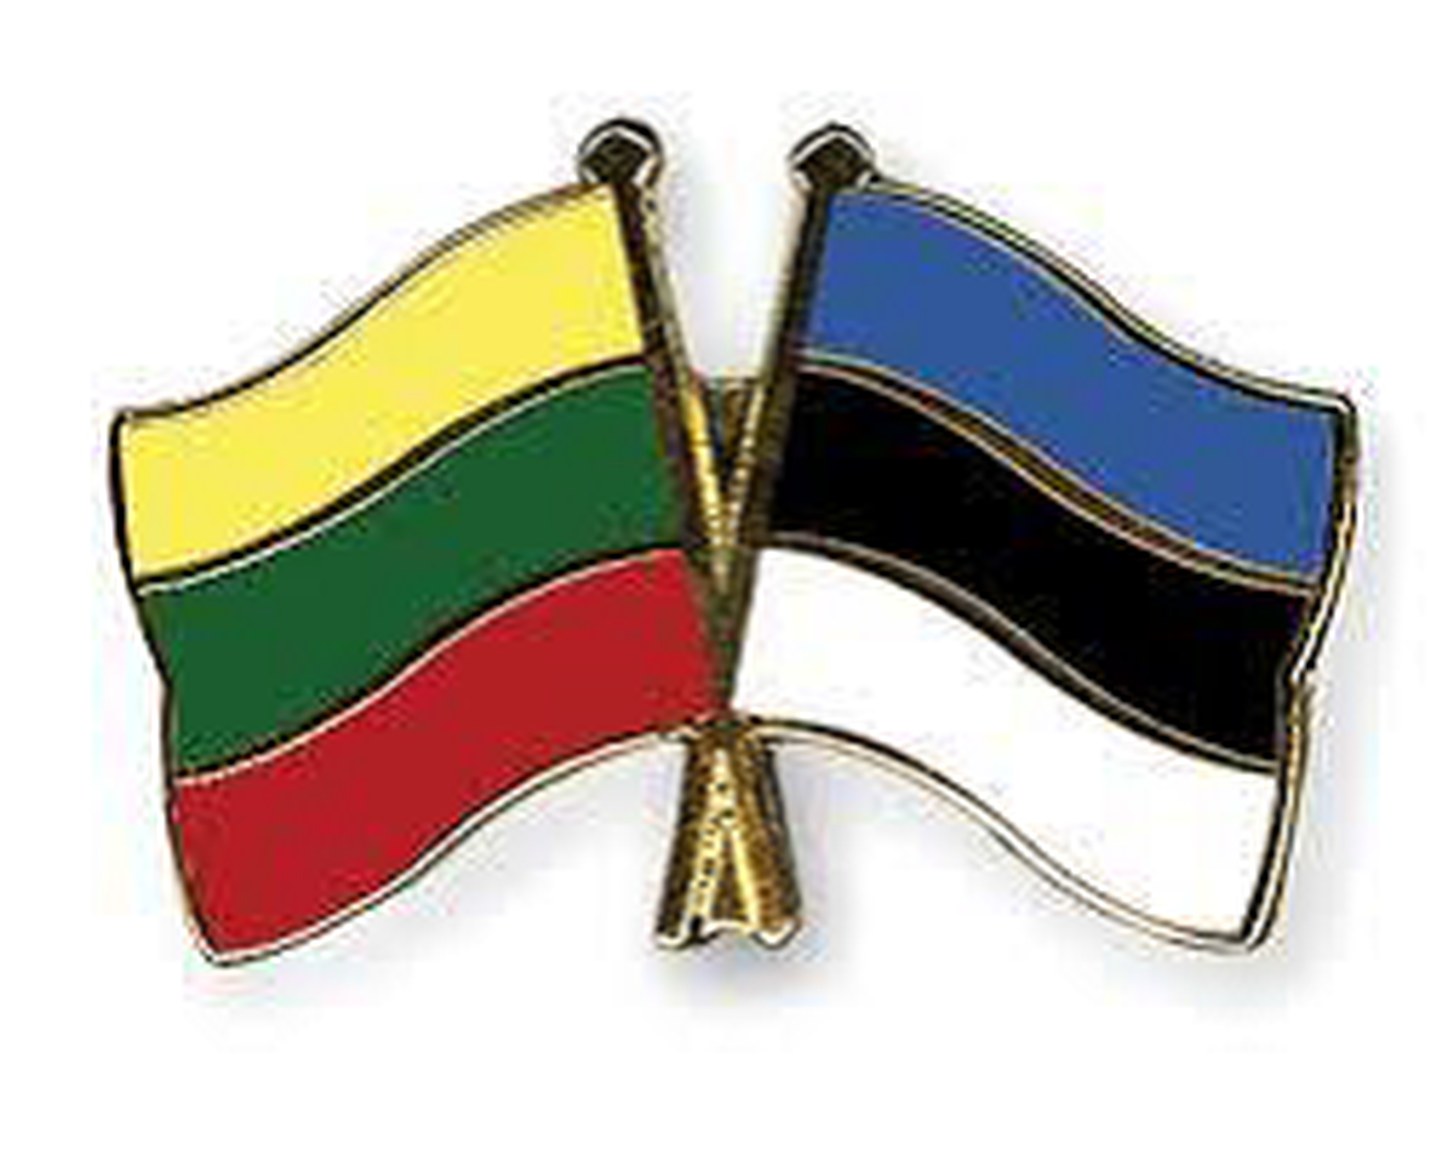 Leedu ja Eesti lipud.